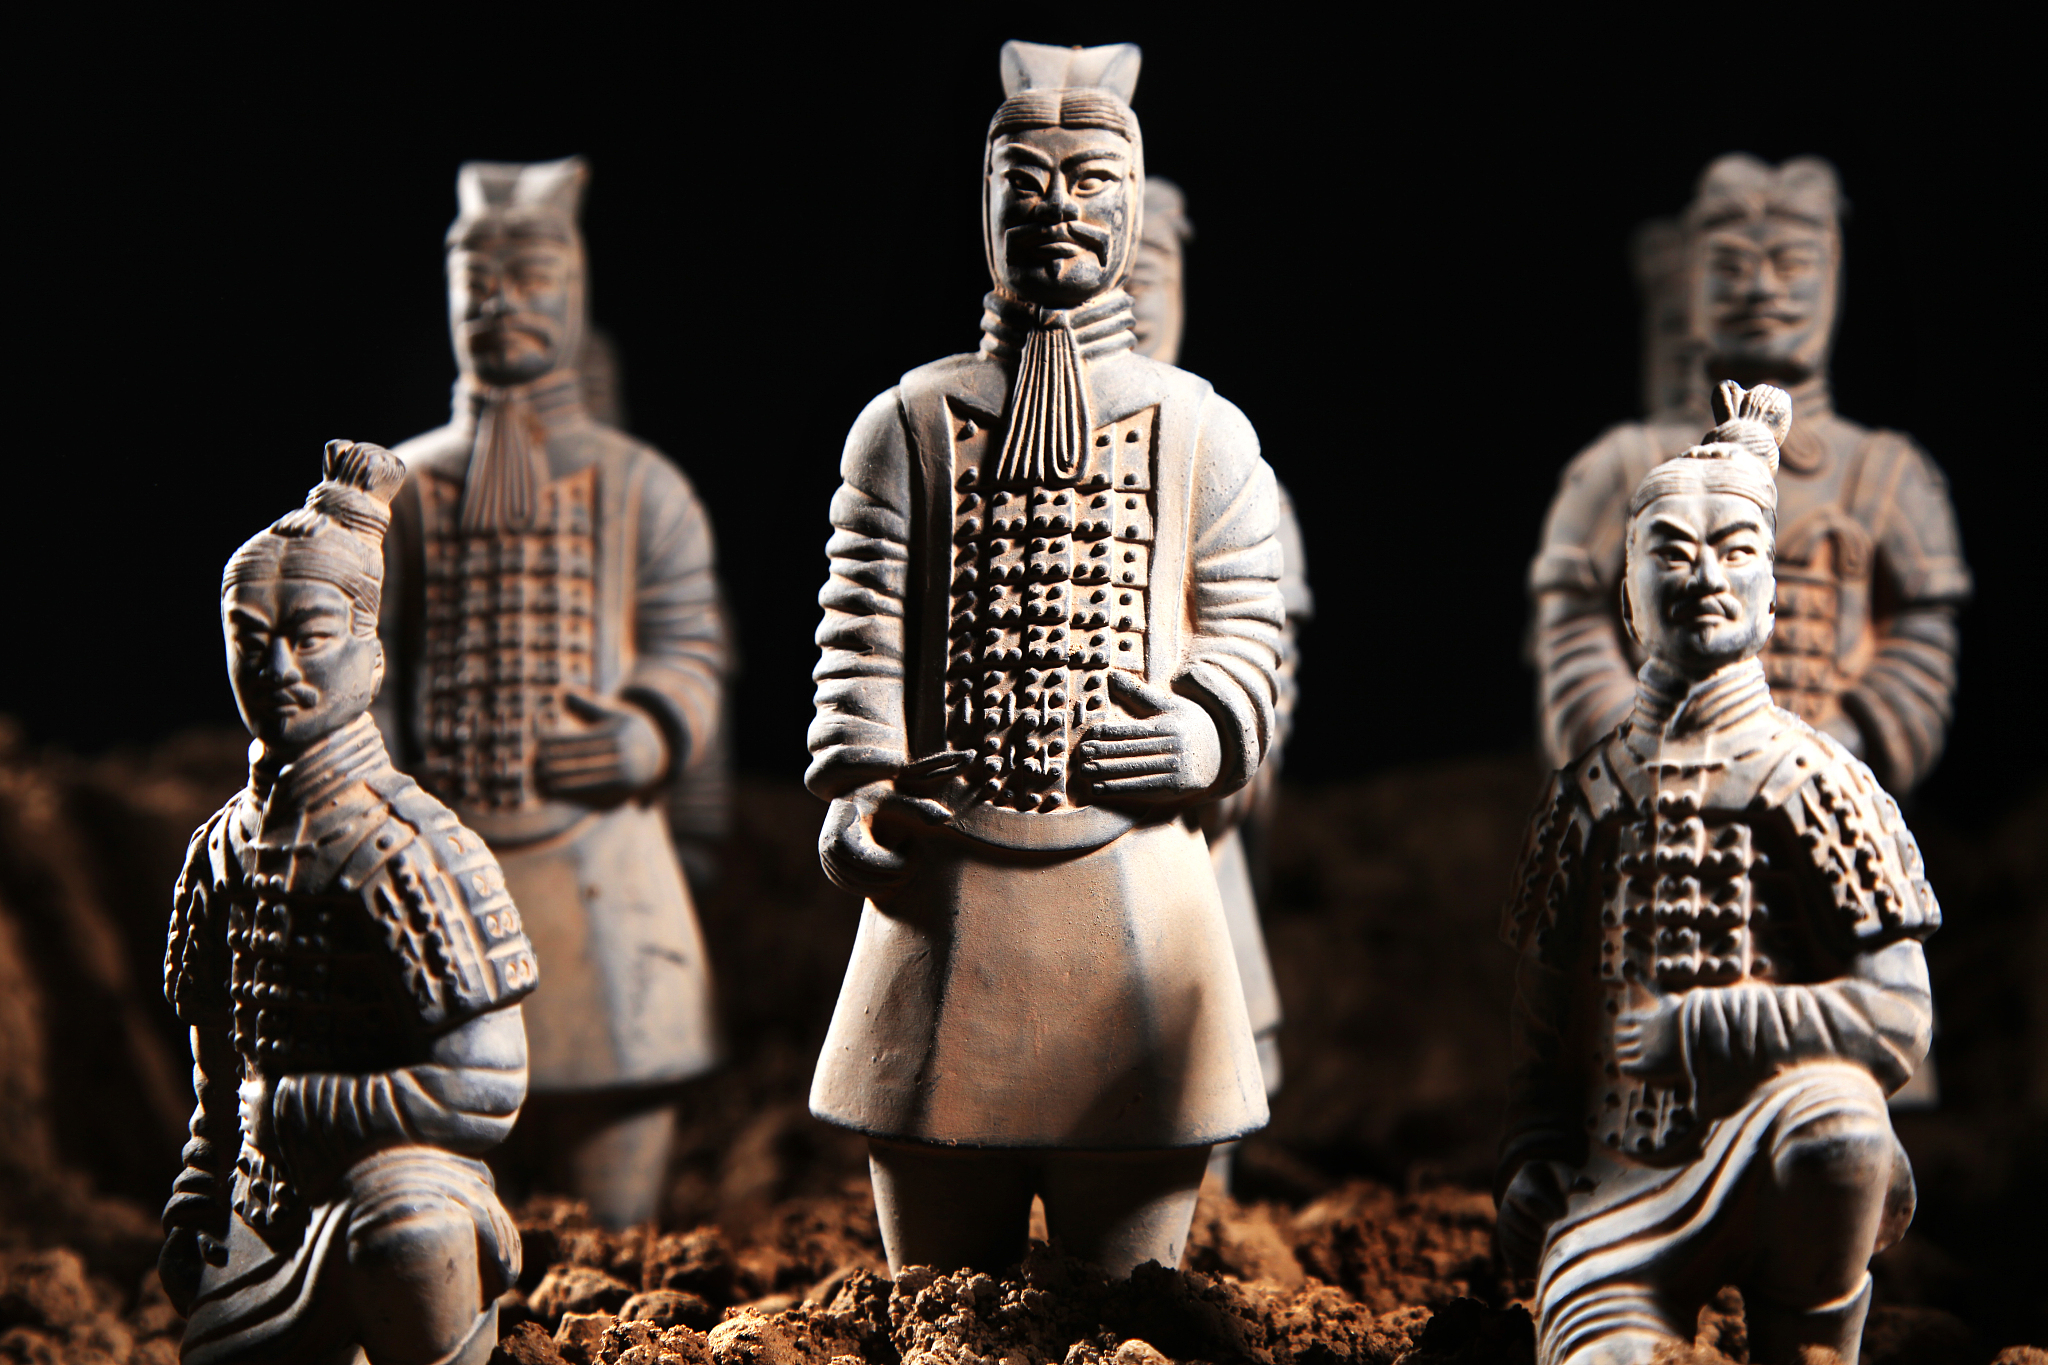 秦始皇陵新发现:彩色的兵马俑和青铜剑,给人们带来新的视觉体验